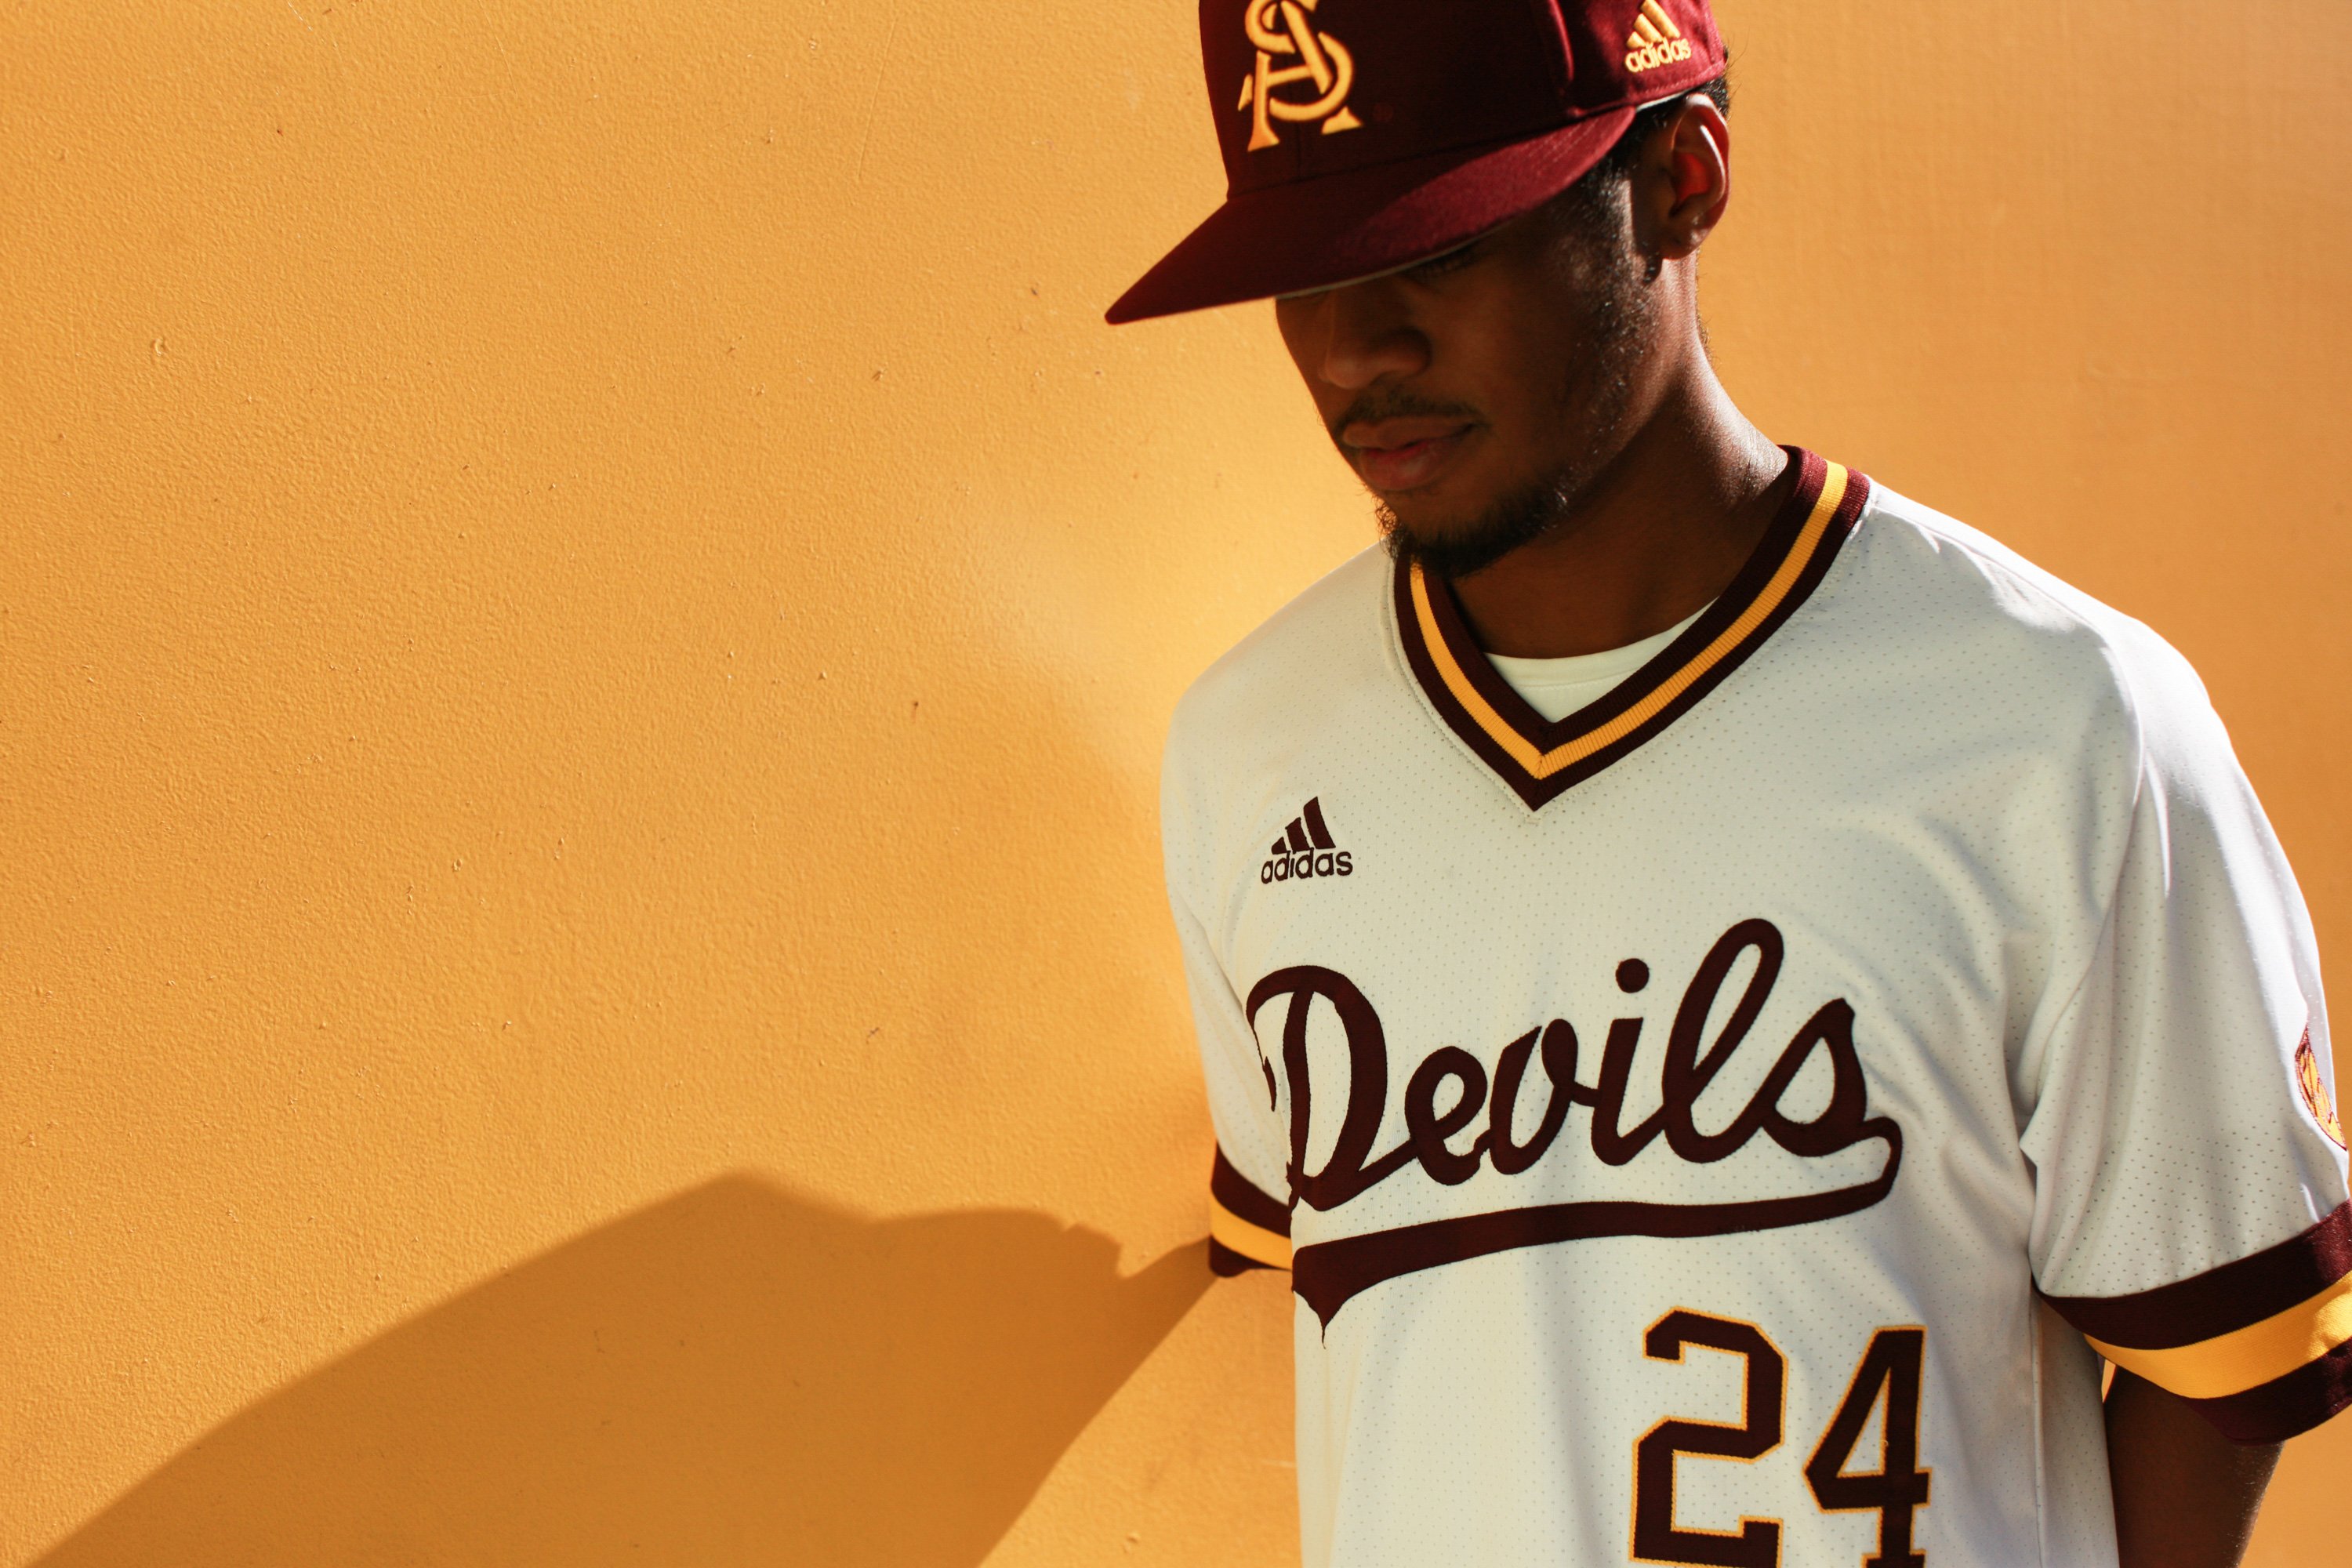 New Arizona State baseball uniforms from adidas